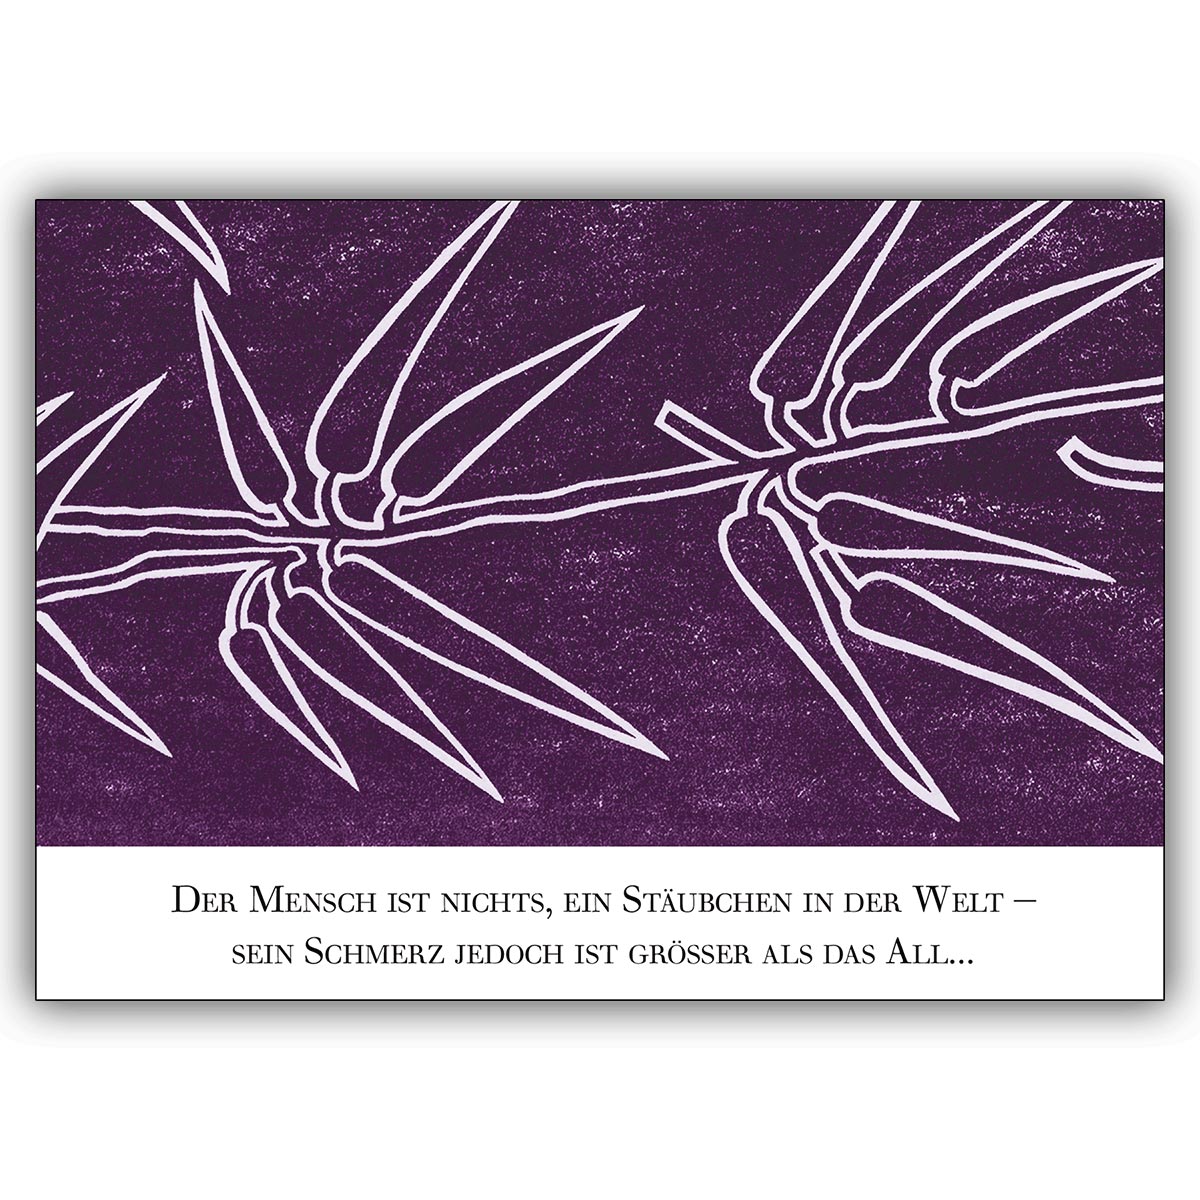 Würdvolle Distel Trauerkarte mit Trauerspruch in violett als Kondolenzkarte